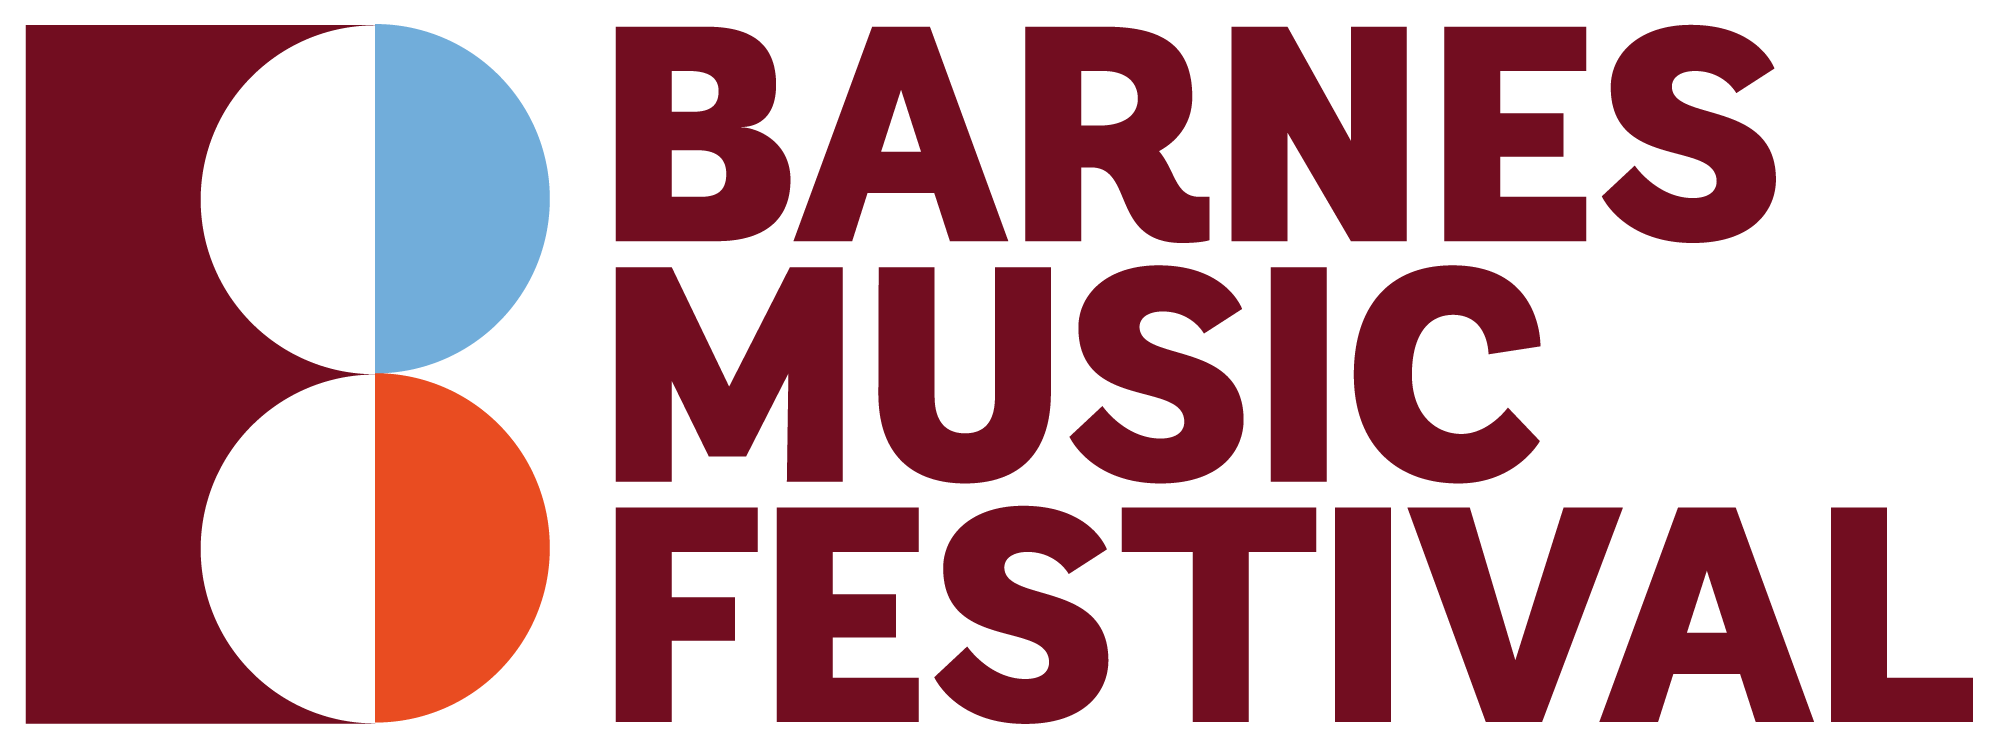 Barnes Music Festival